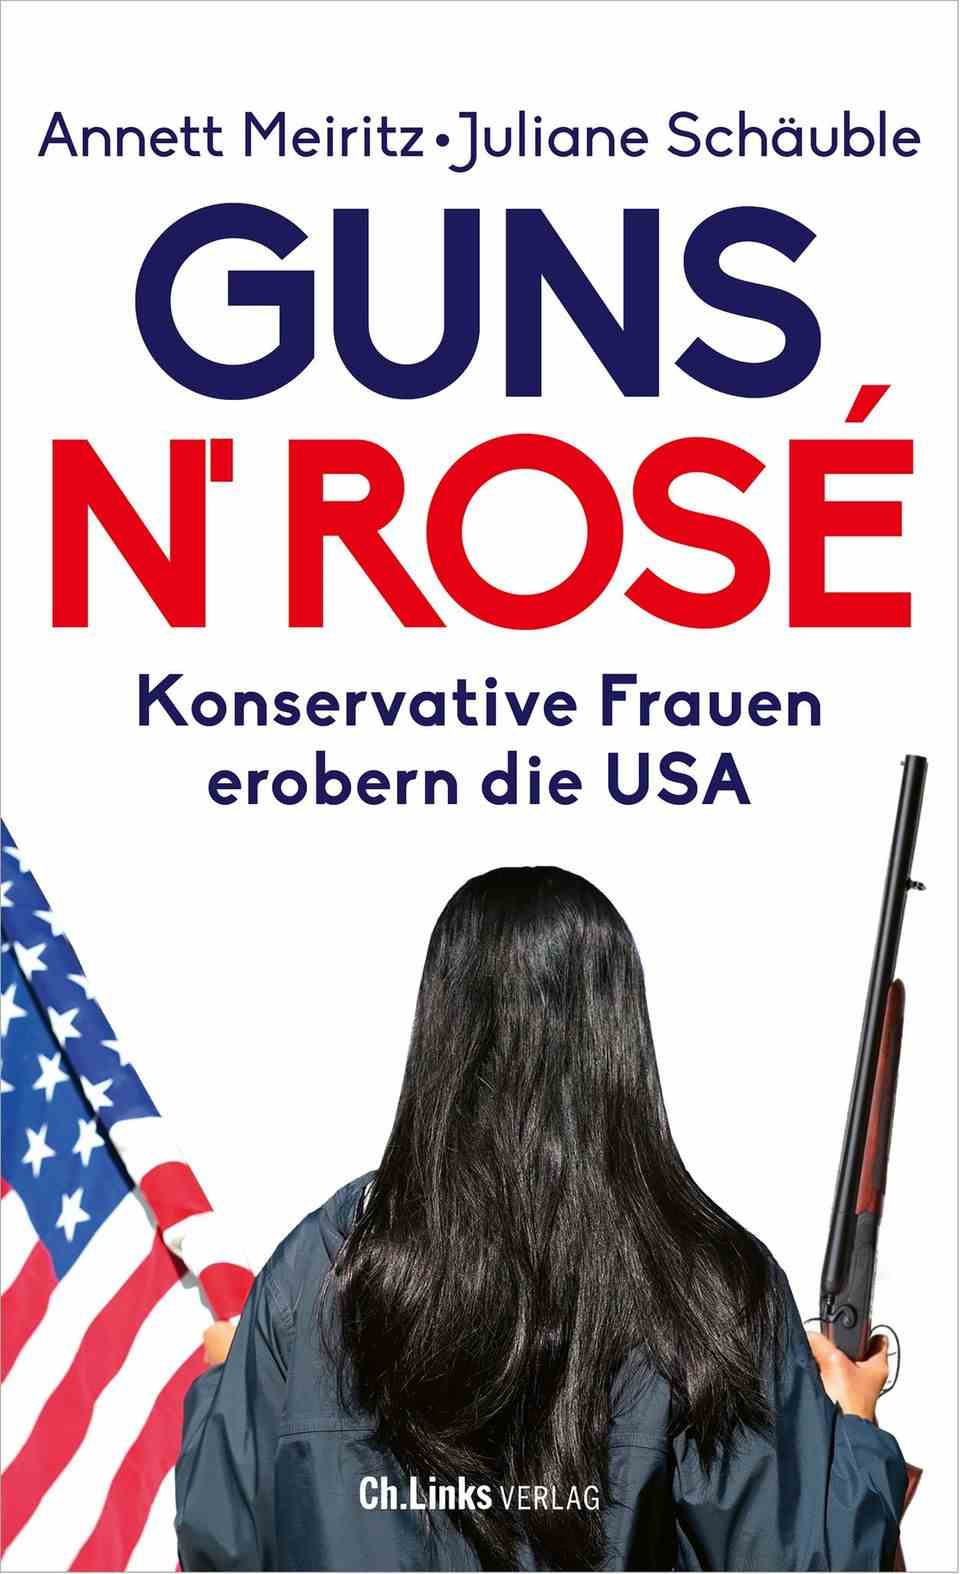 Das Buchcover von "Guns n' Rosé: Konservative Frauen erobern die USA"